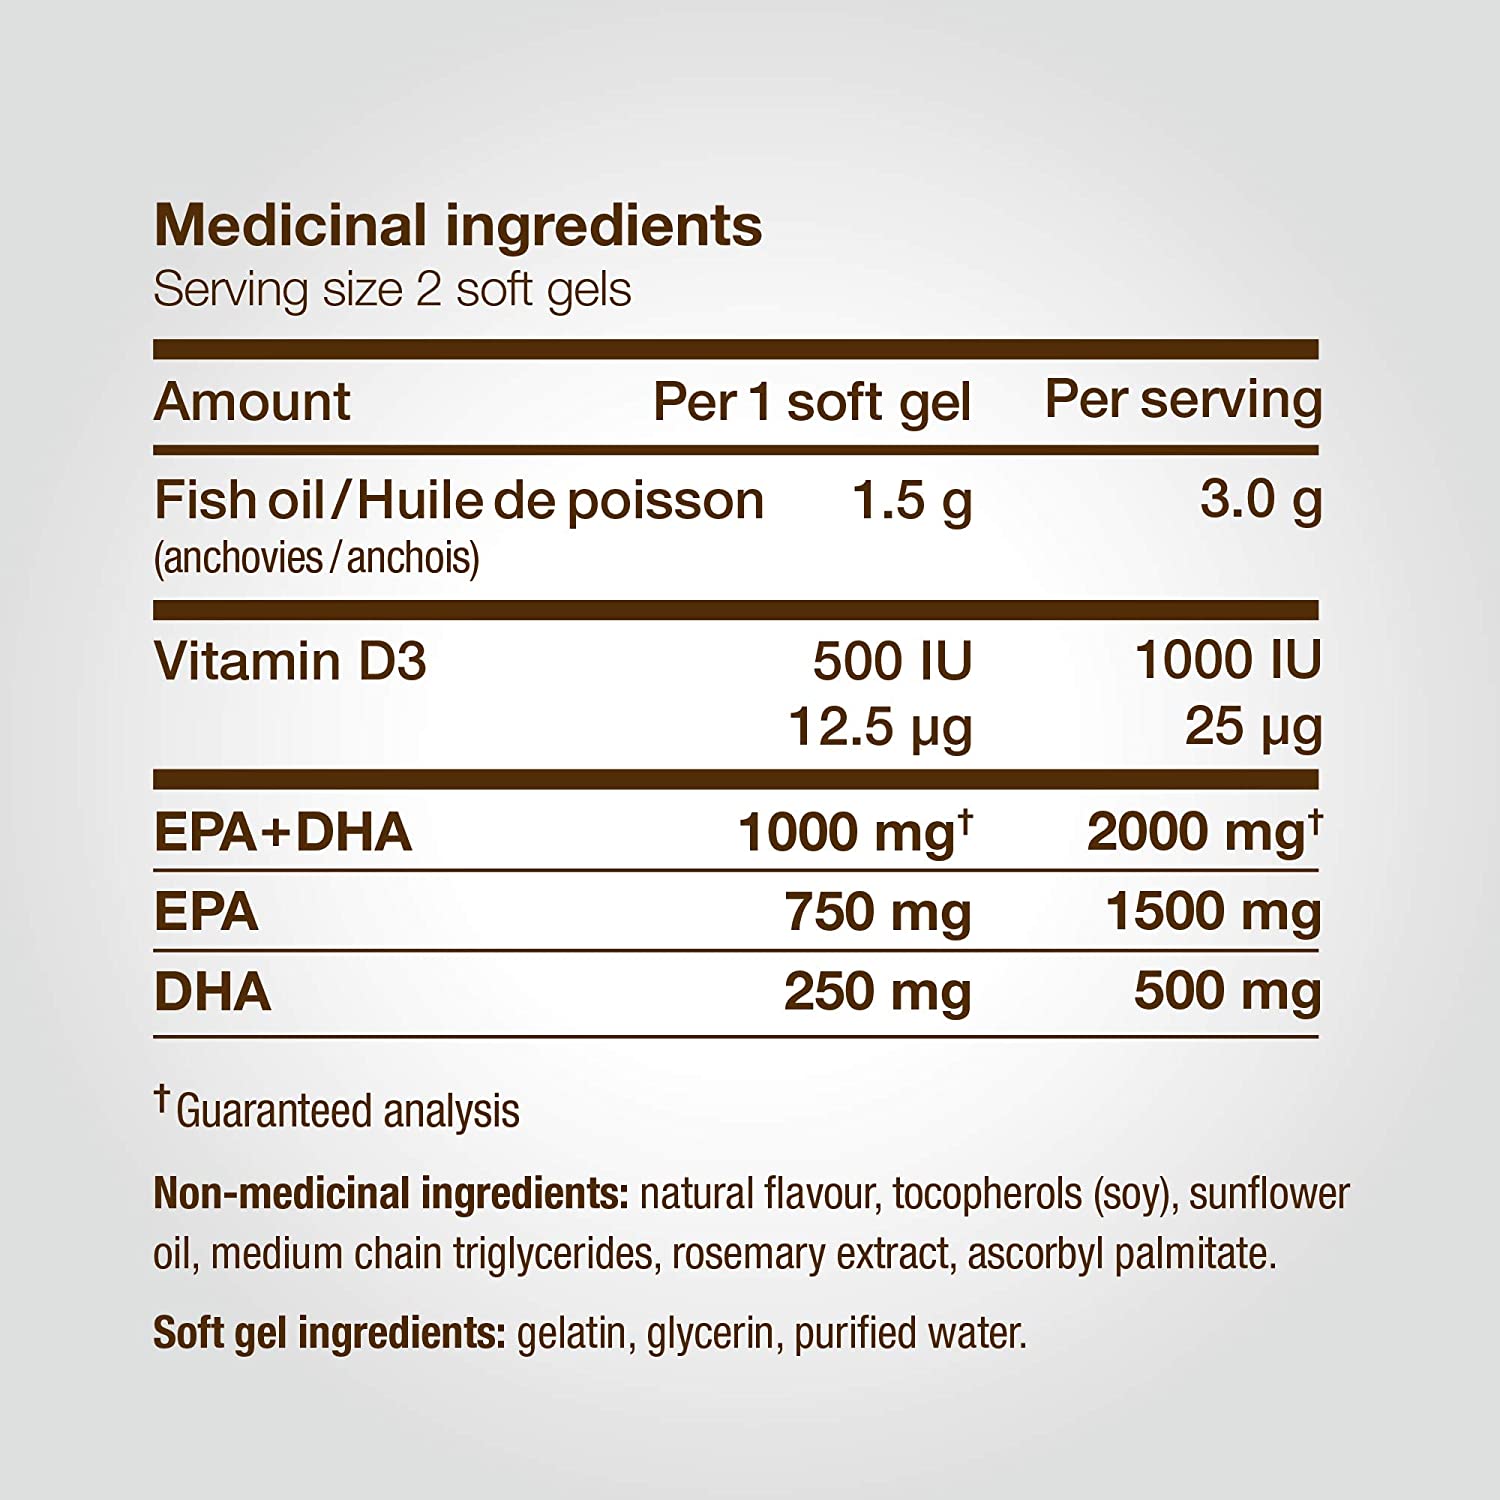 Omega-3 Extra Strength EPA Liquid Gels 60 / Fresh Mint